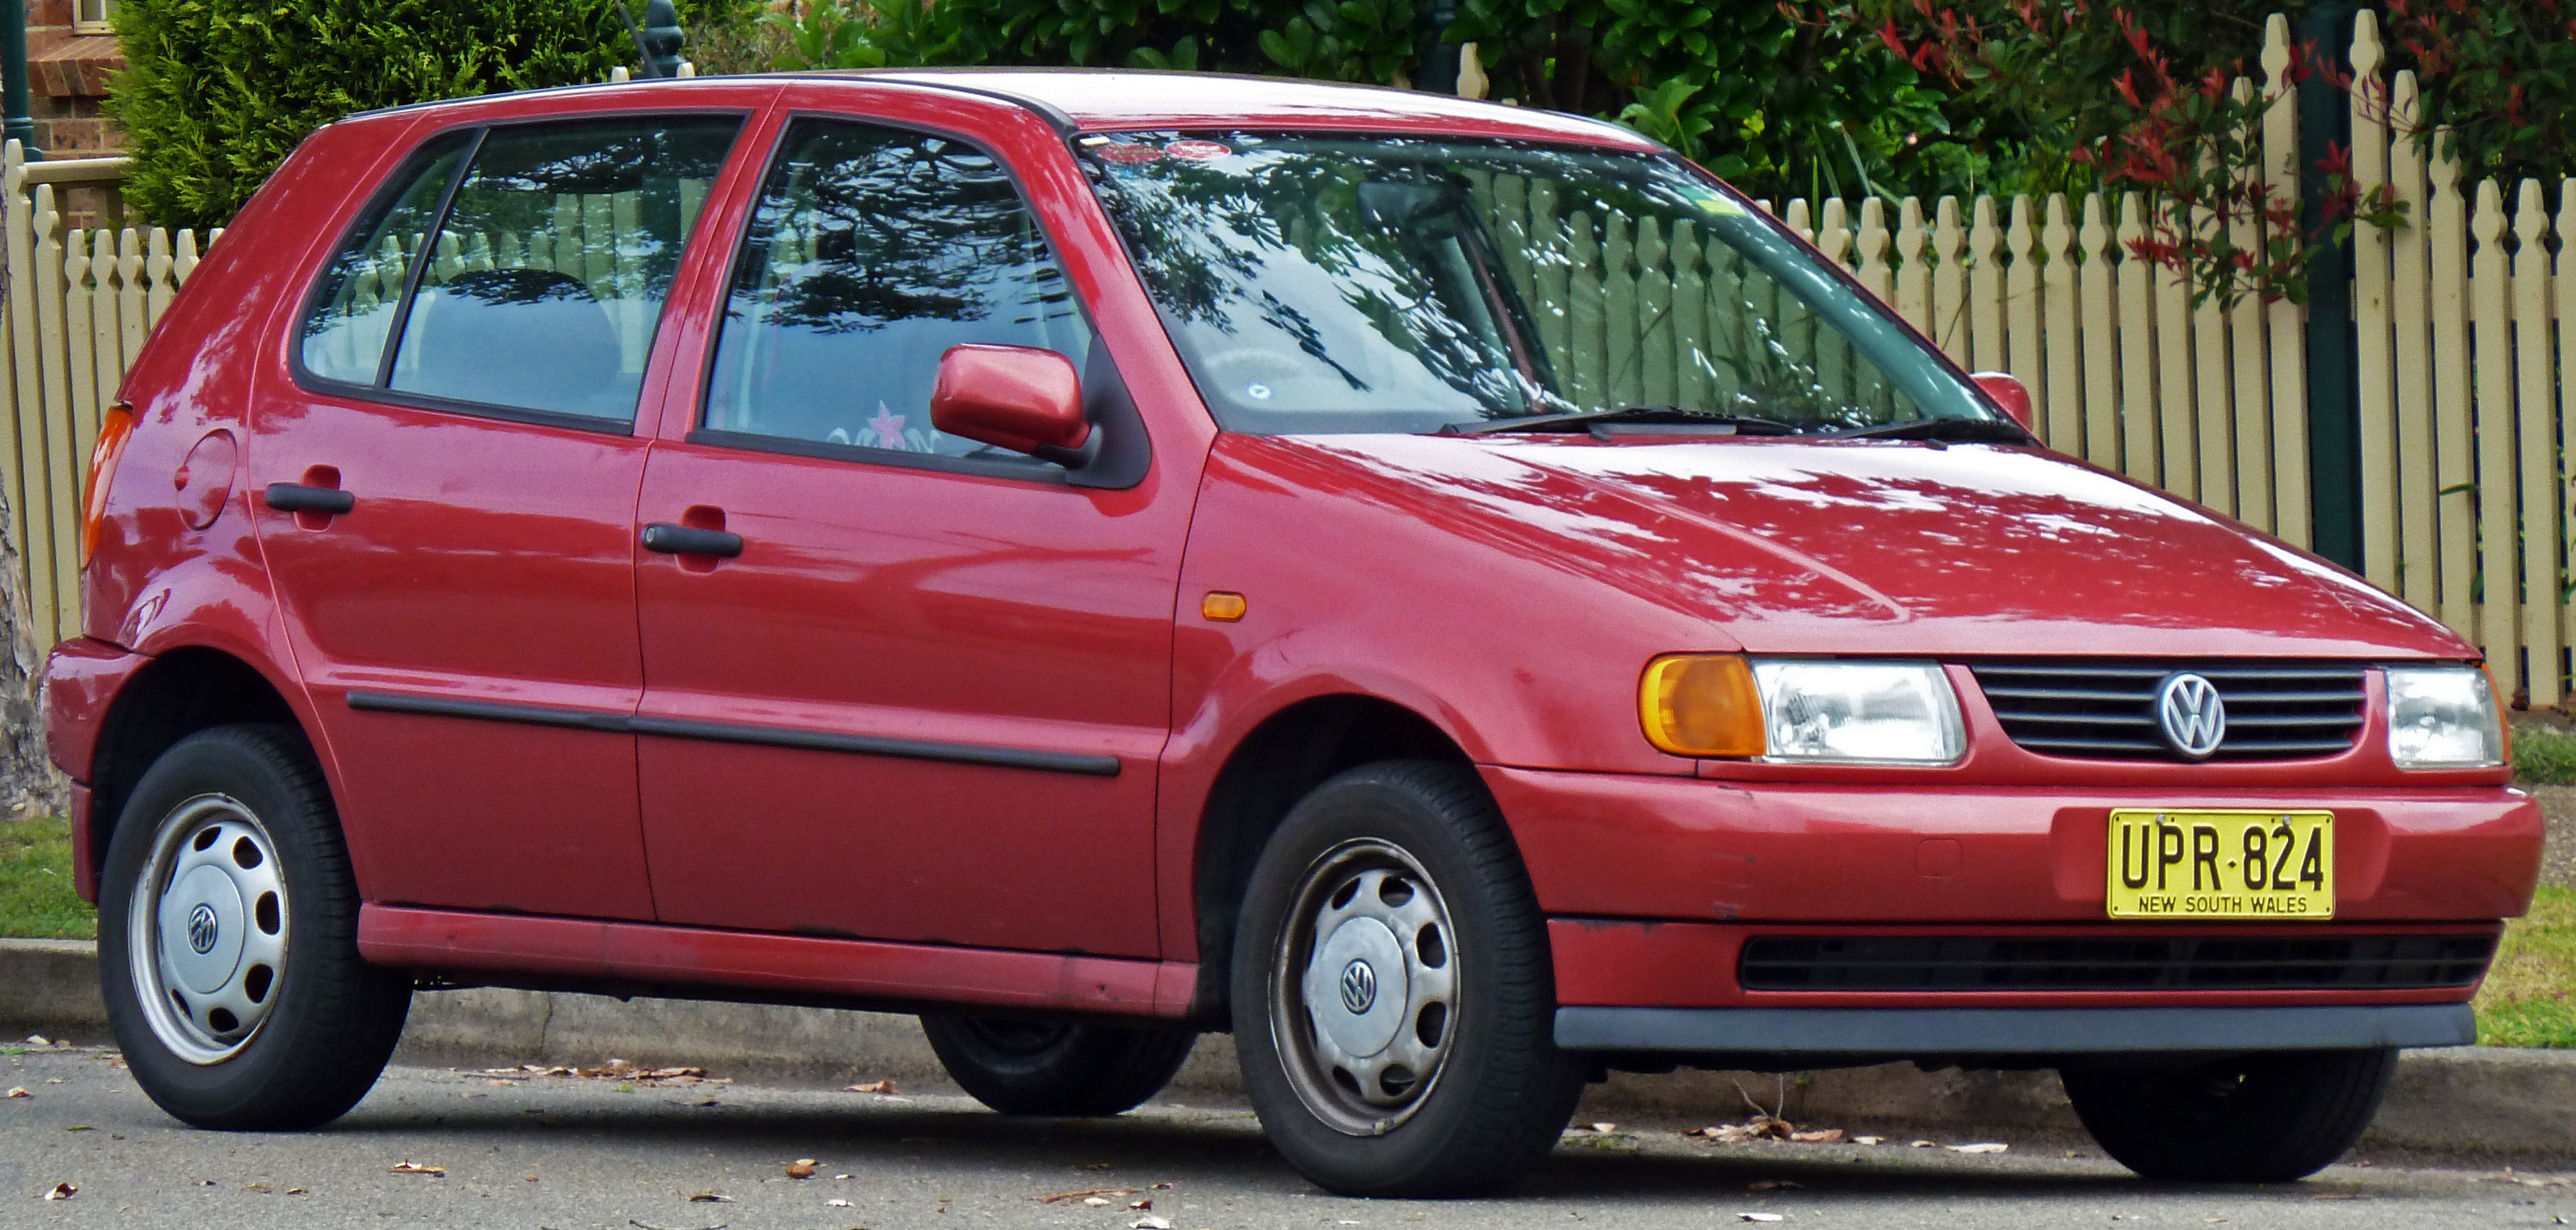 File:1997 Volkswagen Polo (6N) 5-door hatchback (2010-09-23).jpg